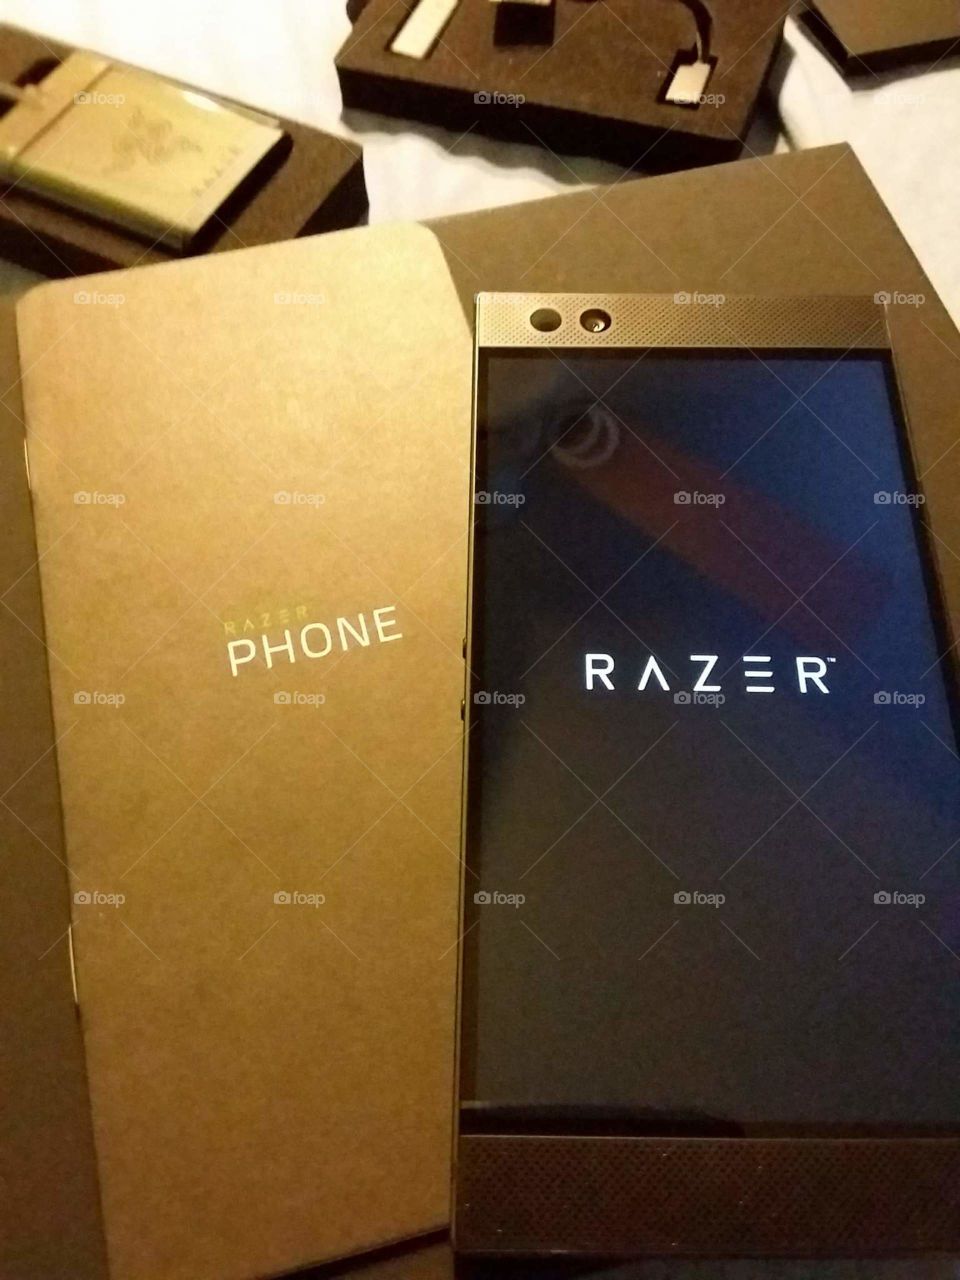 Unboxing Razer Phone